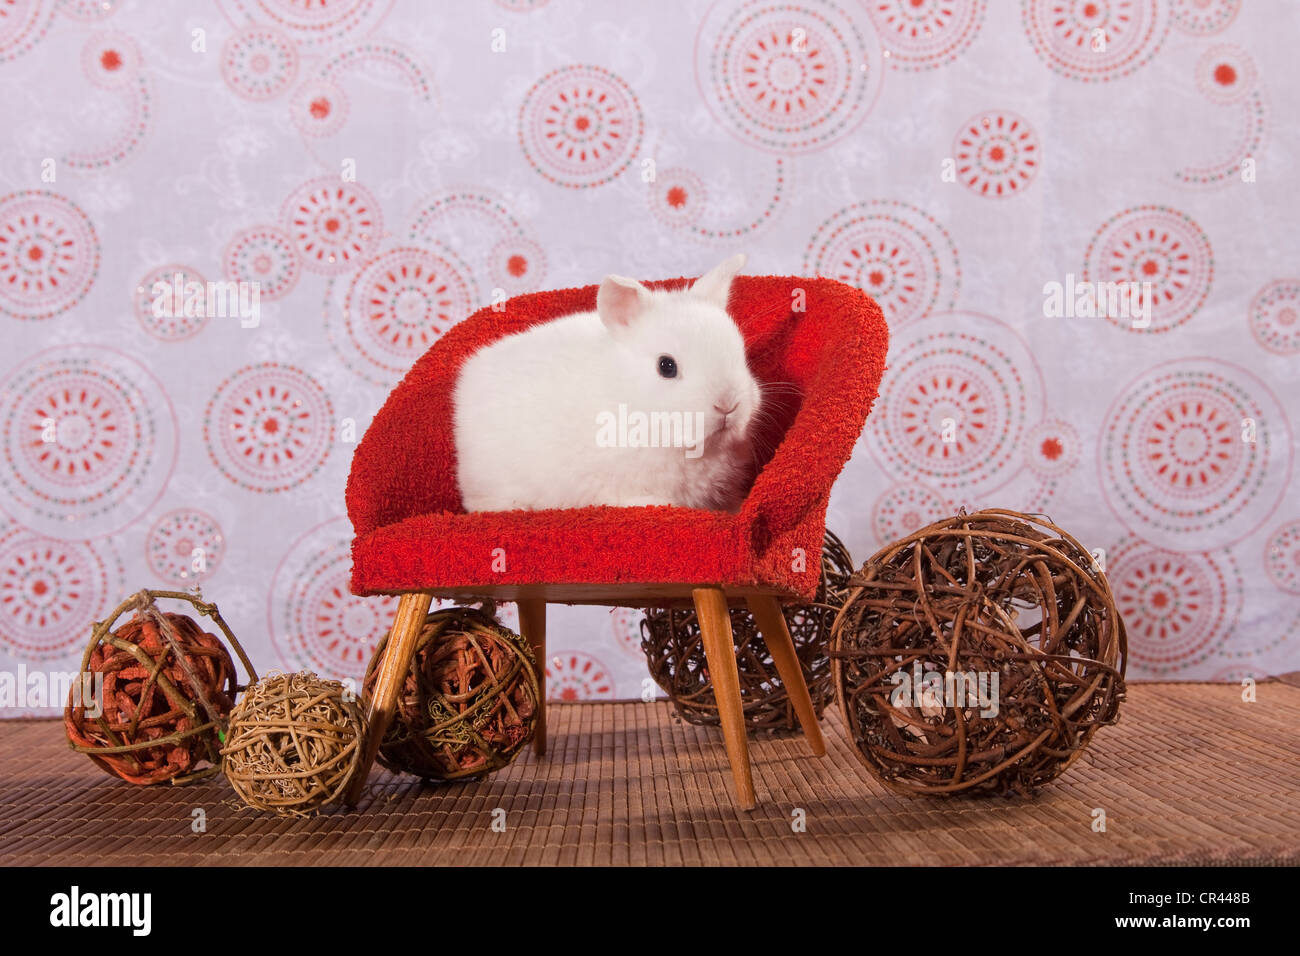 Jeune lapin nain blanc assis sur une chaise rouge mini Banque D'Images